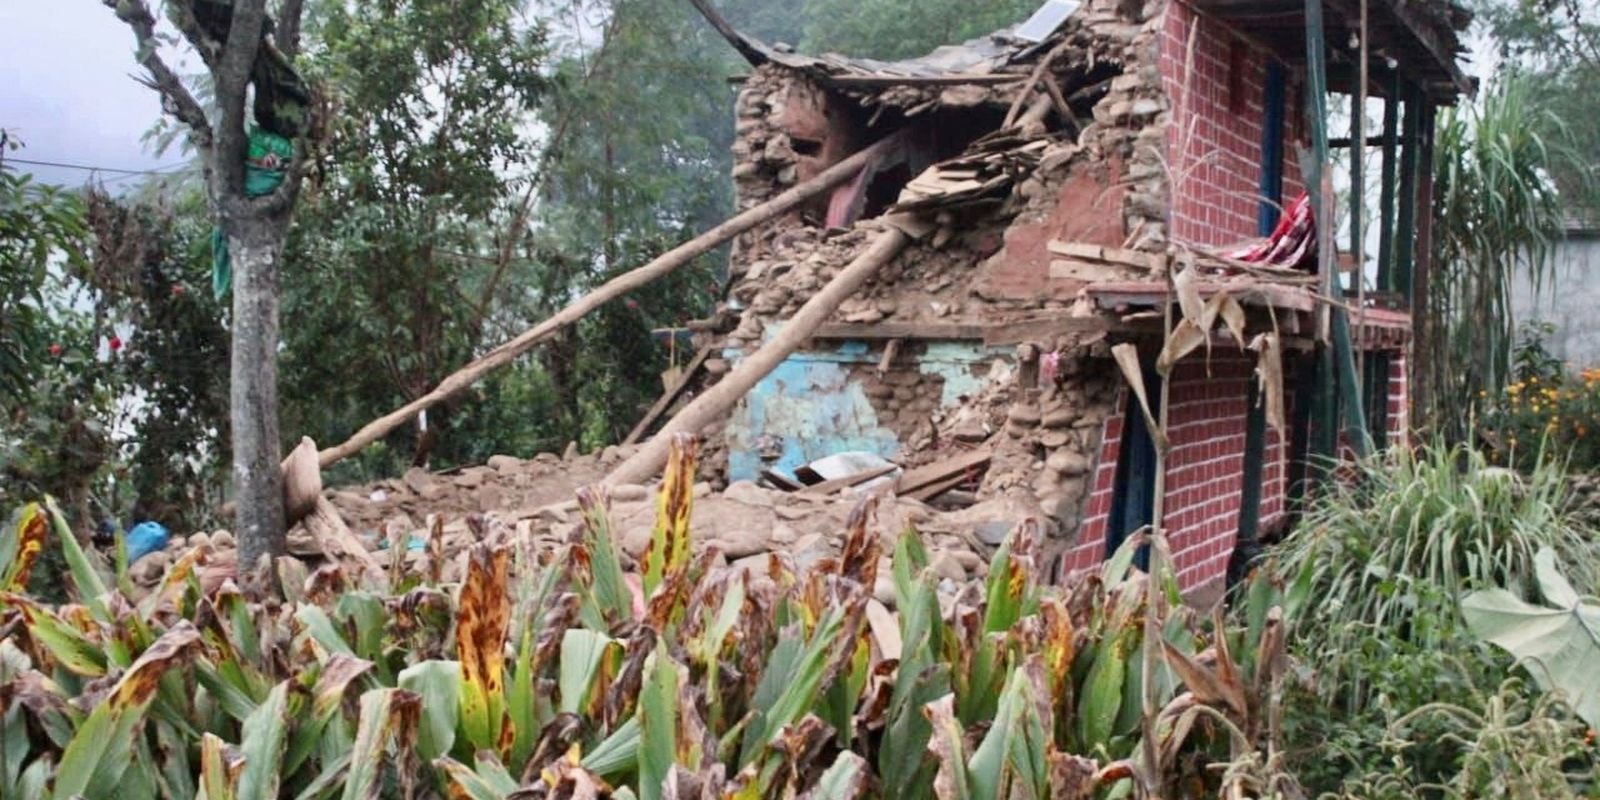 Equipes trabalham para encontrar sobreviventes em terremoto no Nepal